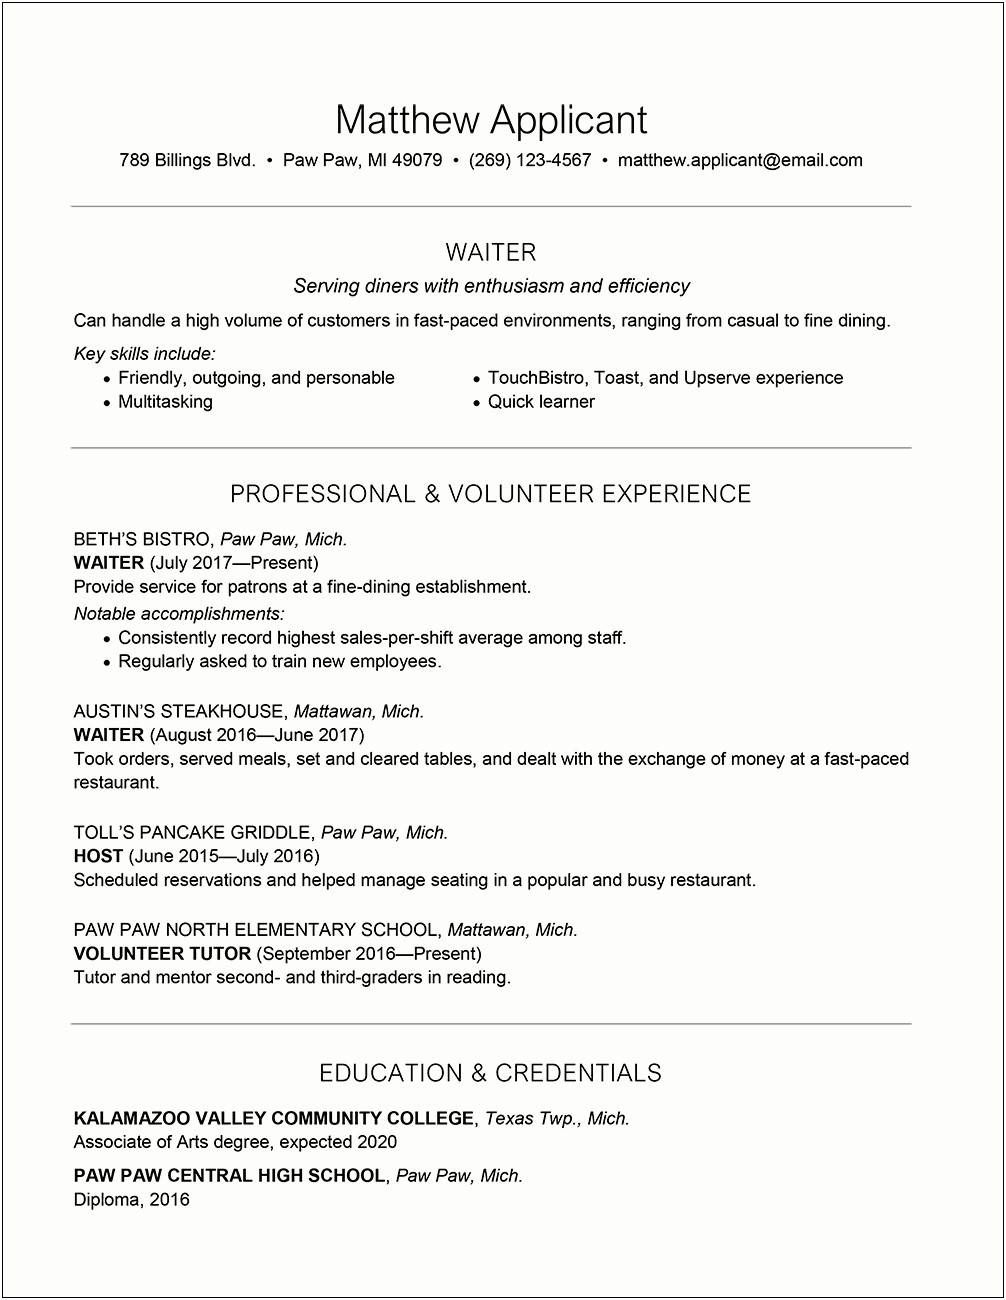 Sample Resume For Captain Waiter